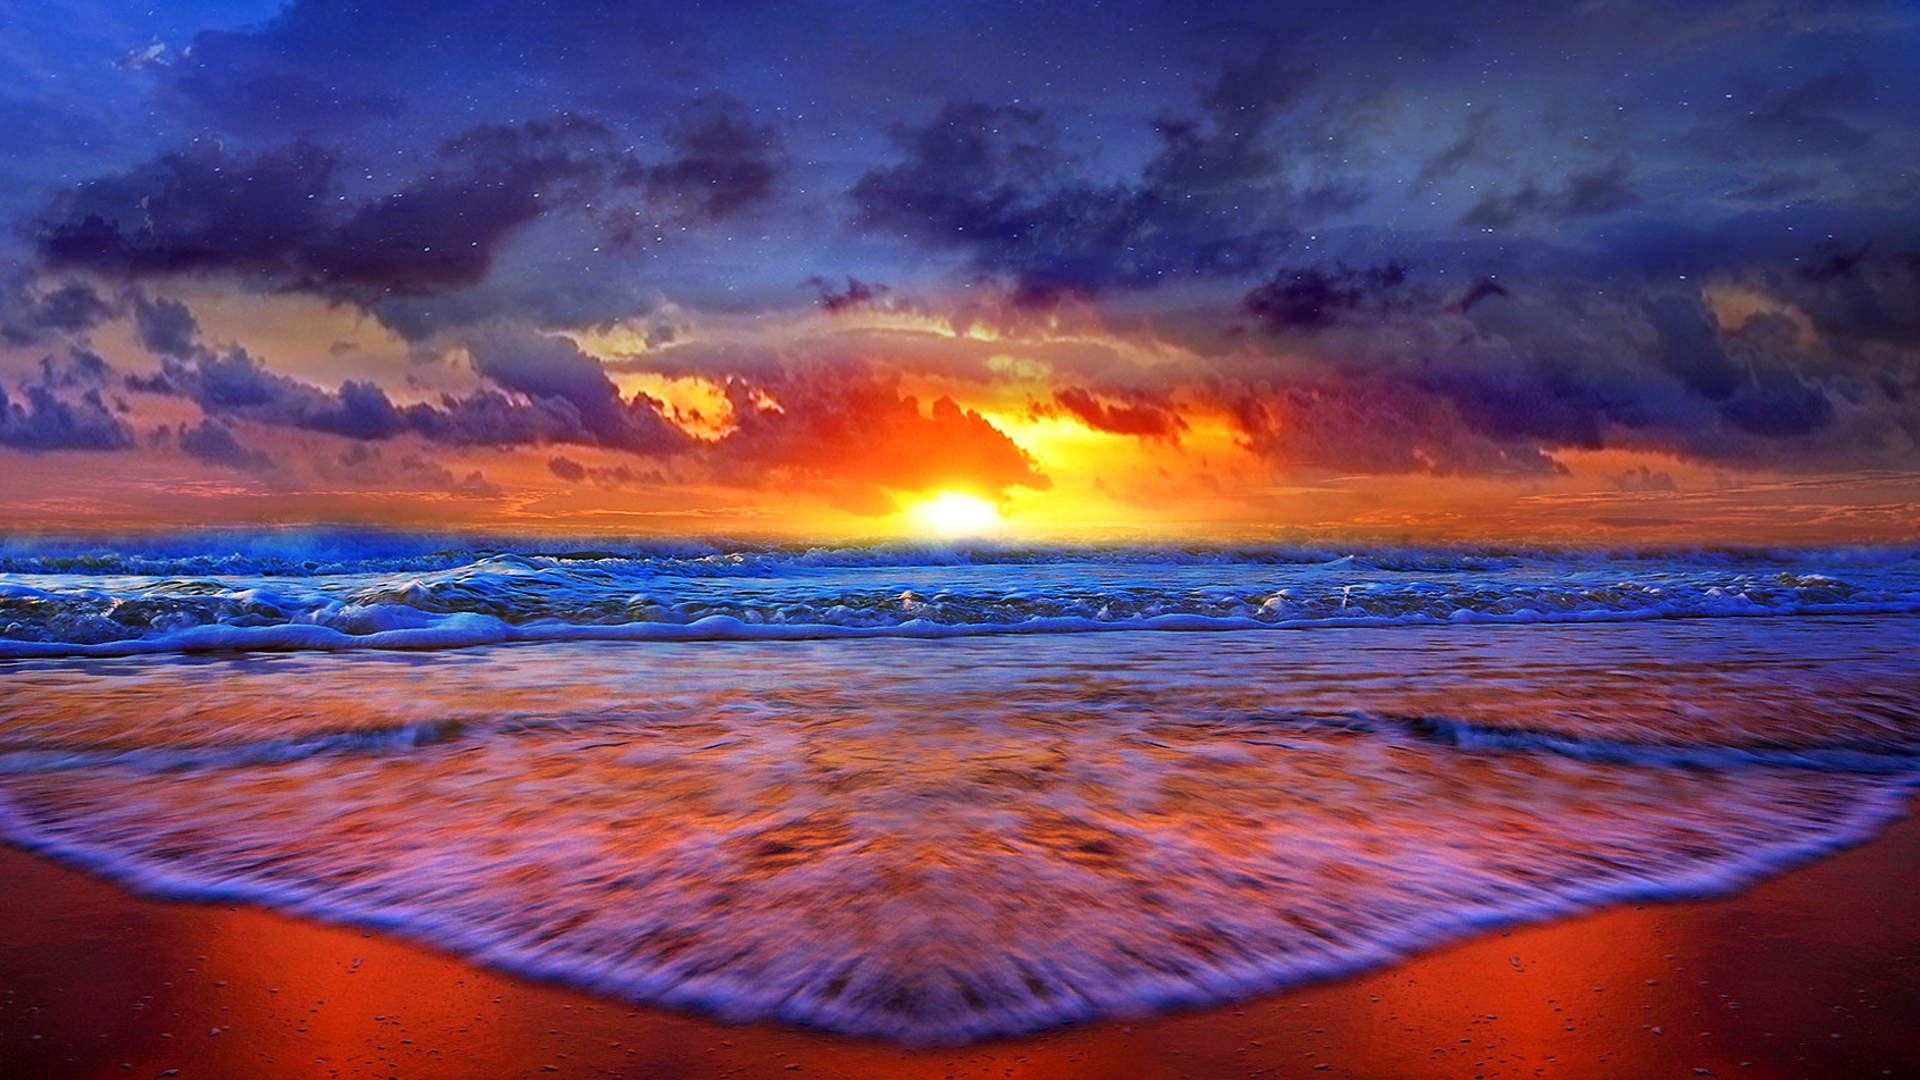 Beach Sunset Wallpaper Full Hd - Beach Sunset Desktop Backgrounds - HD Wallpaper 